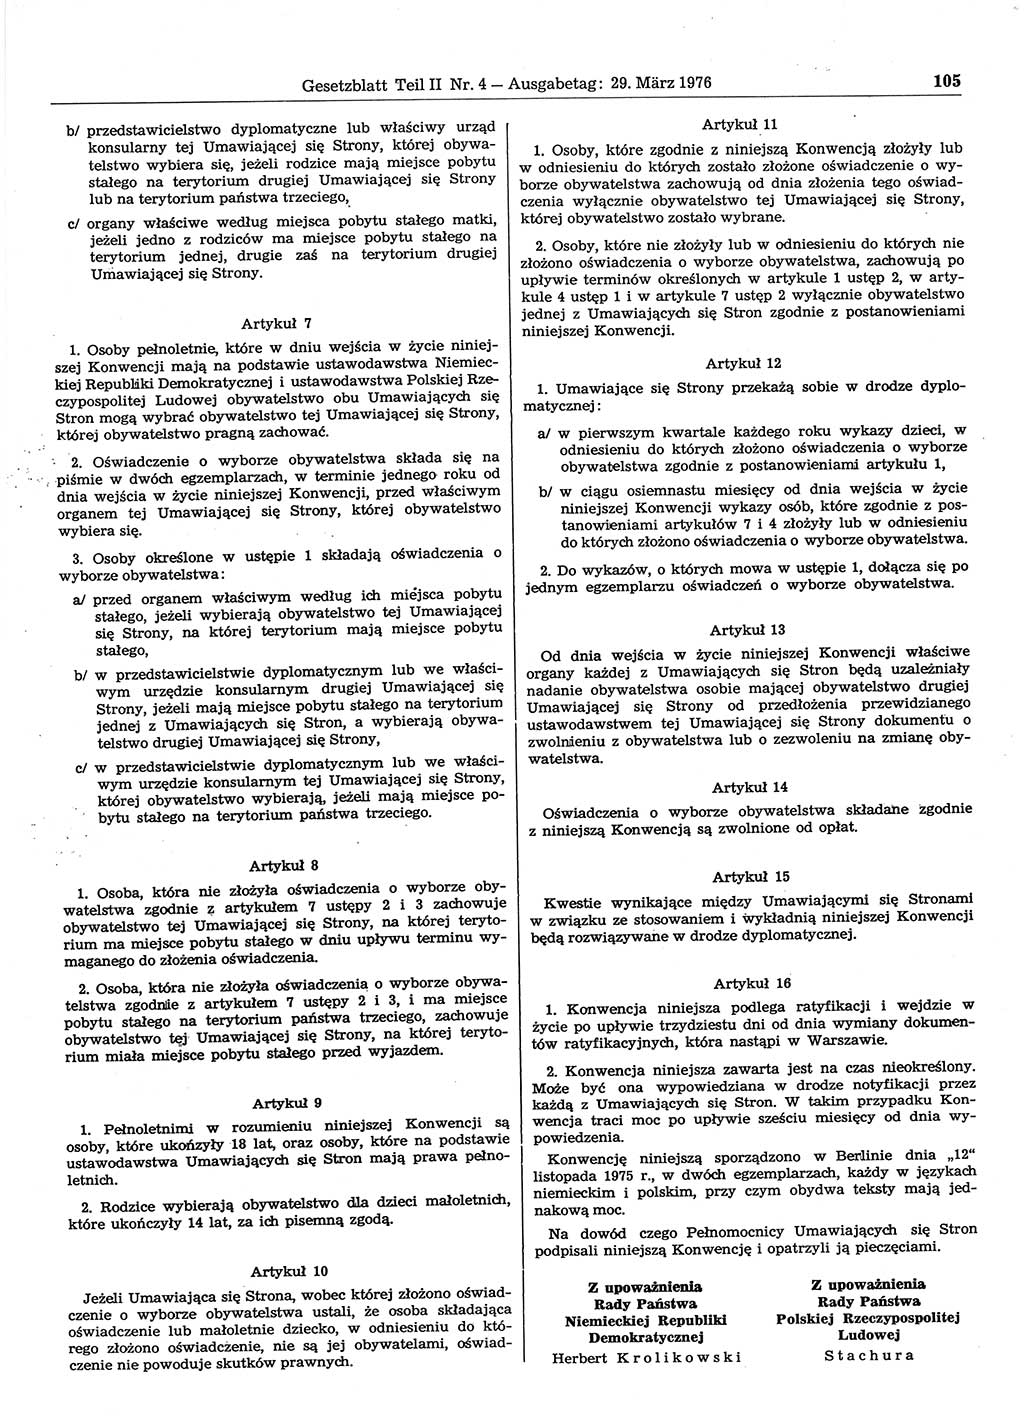 Gesetzblatt (GBl.) der Deutschen Demokratischen Republik (DDR) Teil ⅠⅠ 1976, Seite 105 (GBl. DDR ⅠⅠ 1976, S. 105)